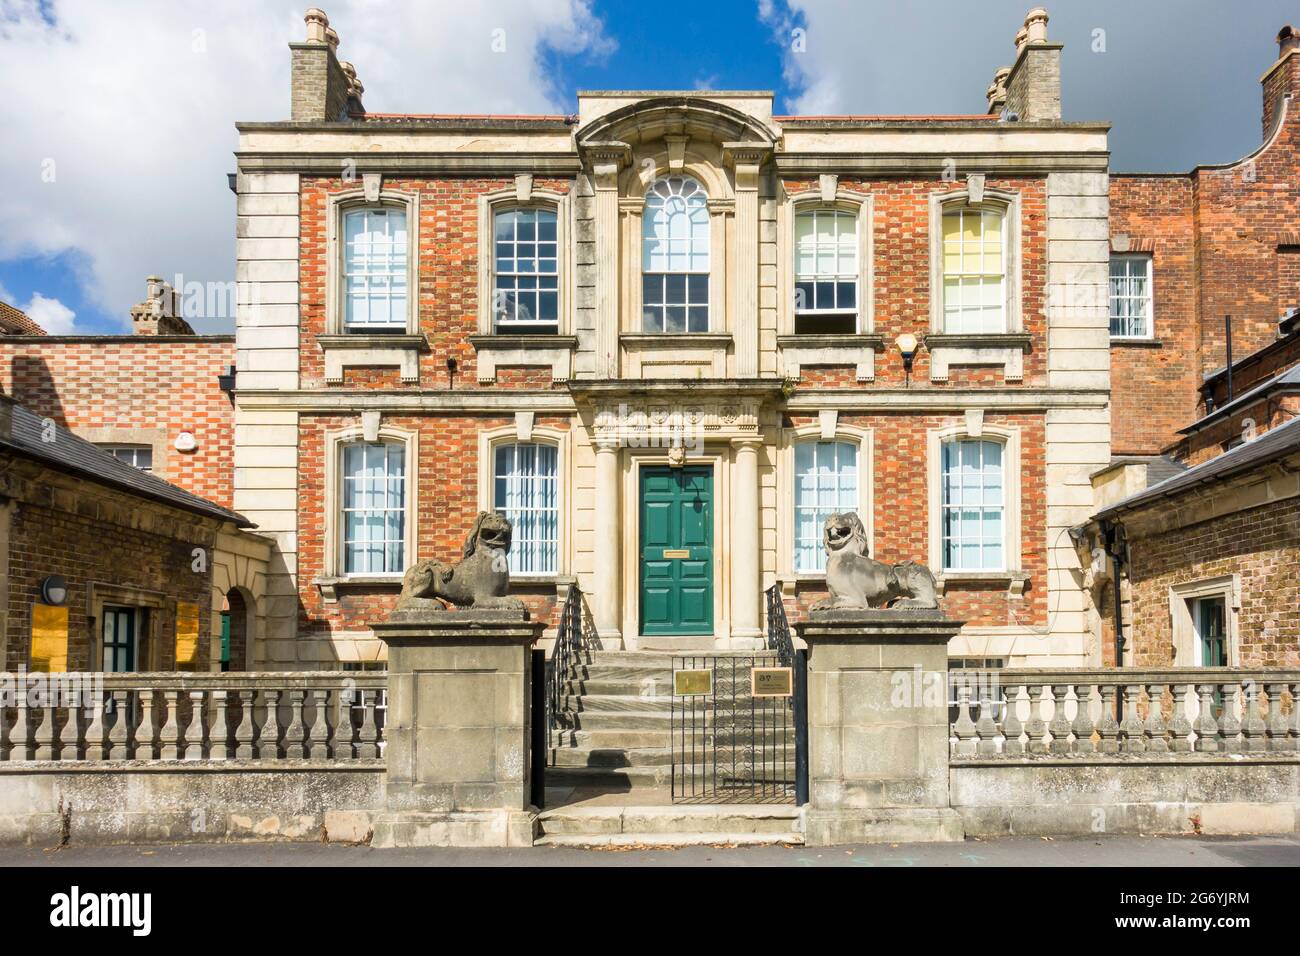 The Lions, ou Lions House, Bridgwater, Somerset, une ancienne maison géorgienne de 1720-30 par Benjamin Holloway dans un style baroque. Banque D'Images